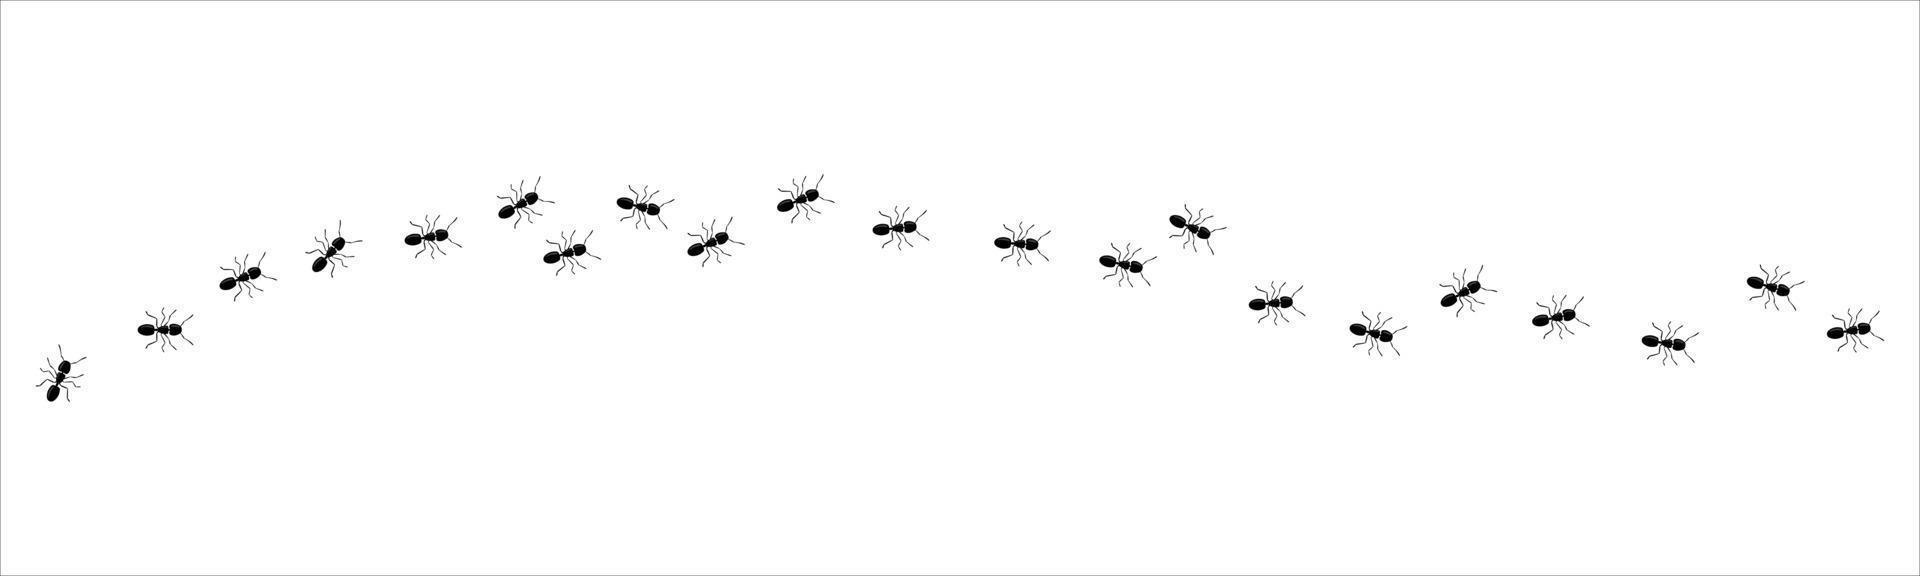 rastro de hormigas columna de hormigas viaje de siluetas de insectos negros. trabajo en equipo, concepto de trabajo duro. vector